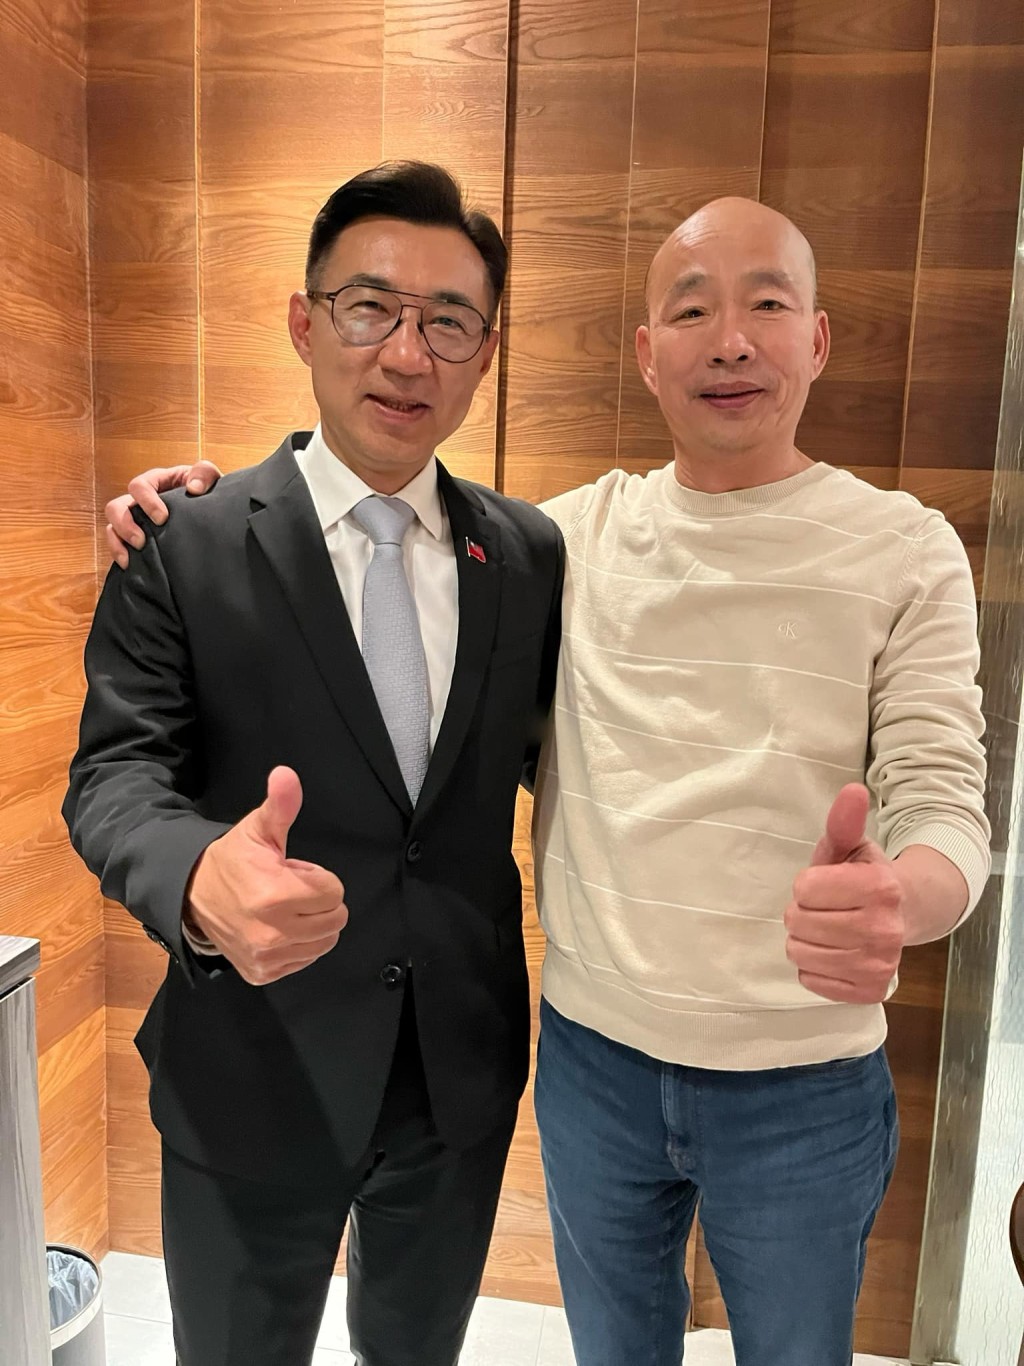 韩国瑜和江启臣代表国民党竞逐台湾立法院正副院长。Facebook